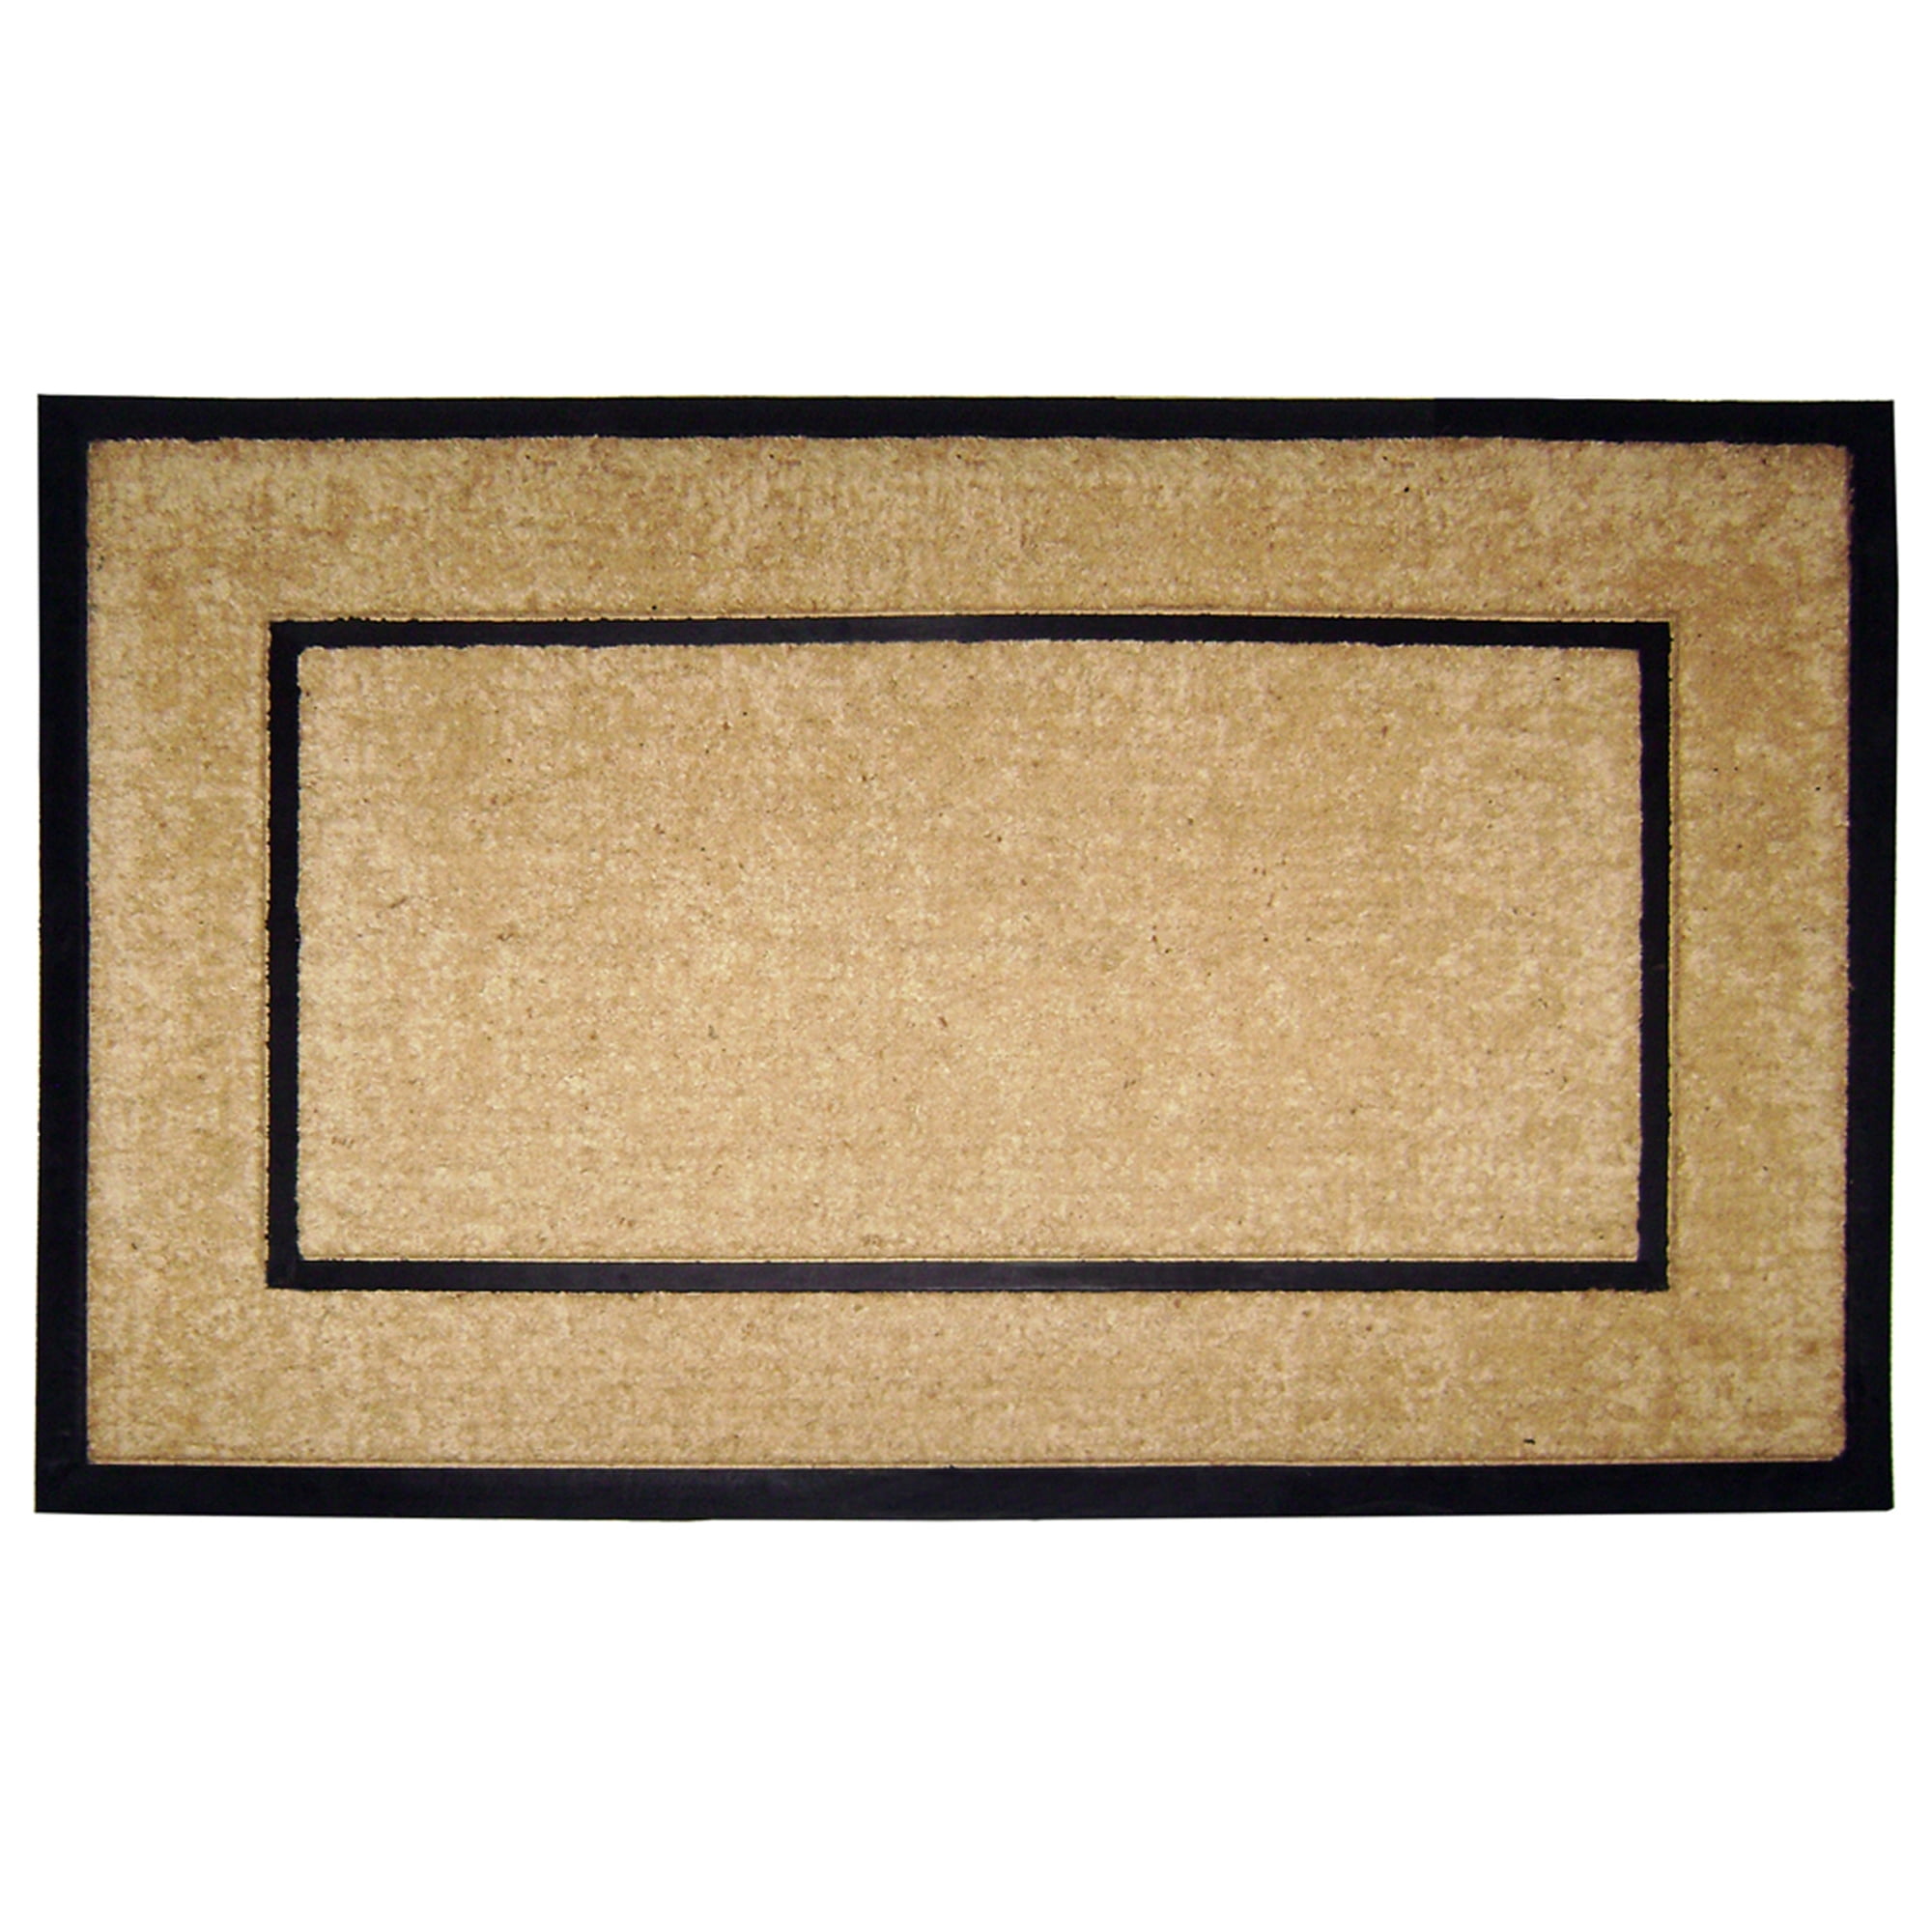 Picture Frame Doormat